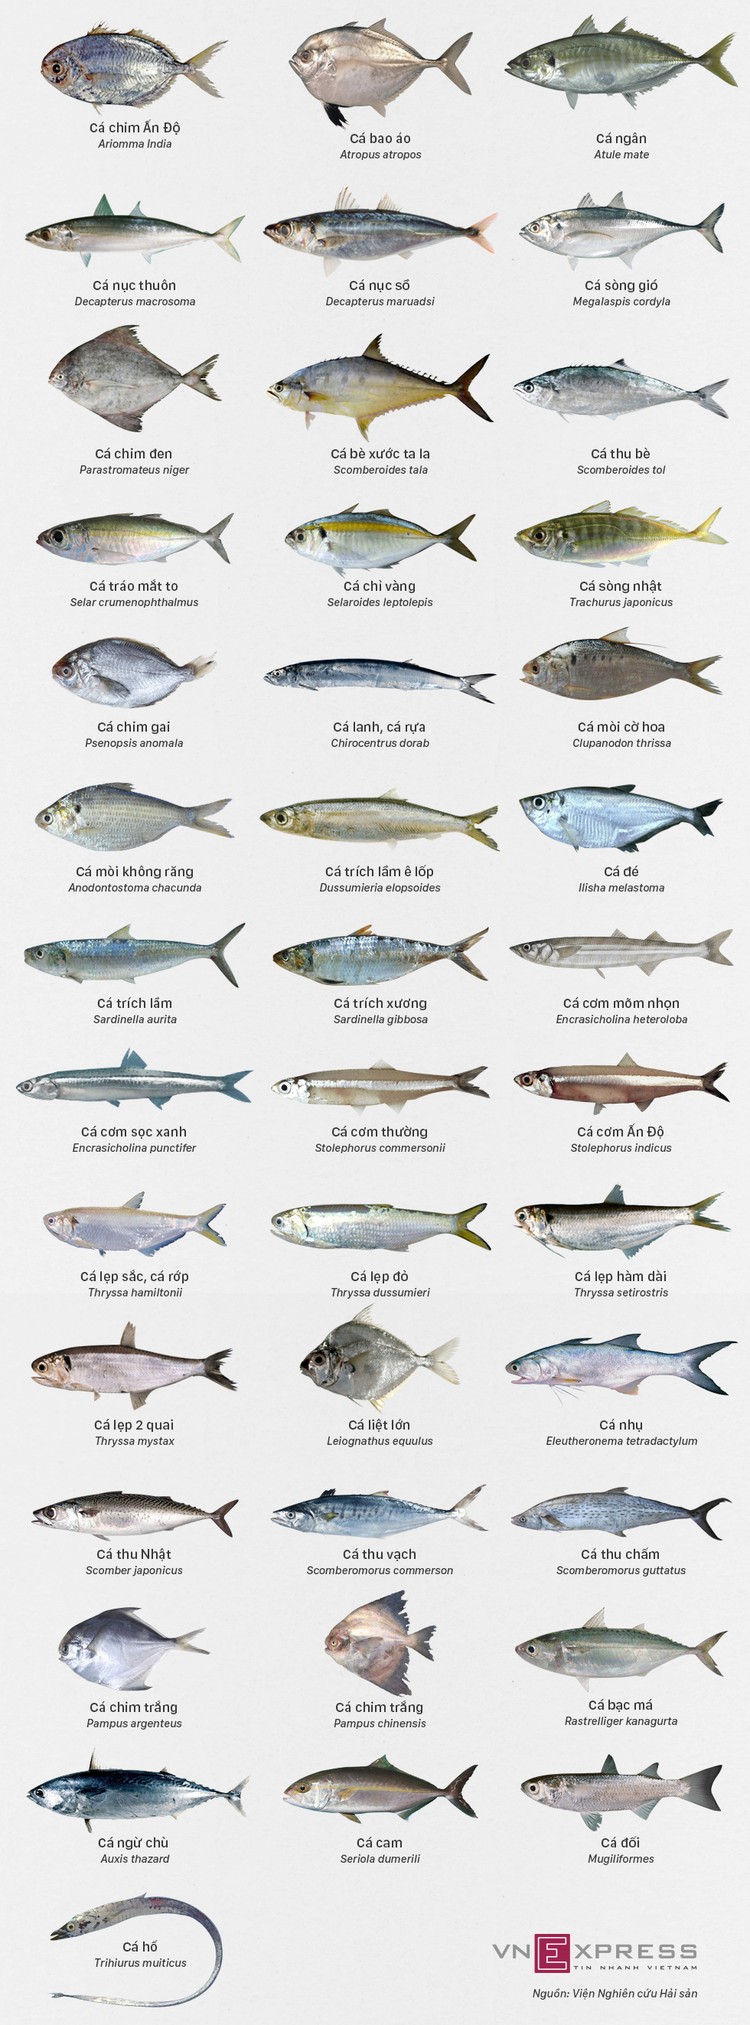 Các loại cá biển miền Trung khuyến cáo an toàn để ăn